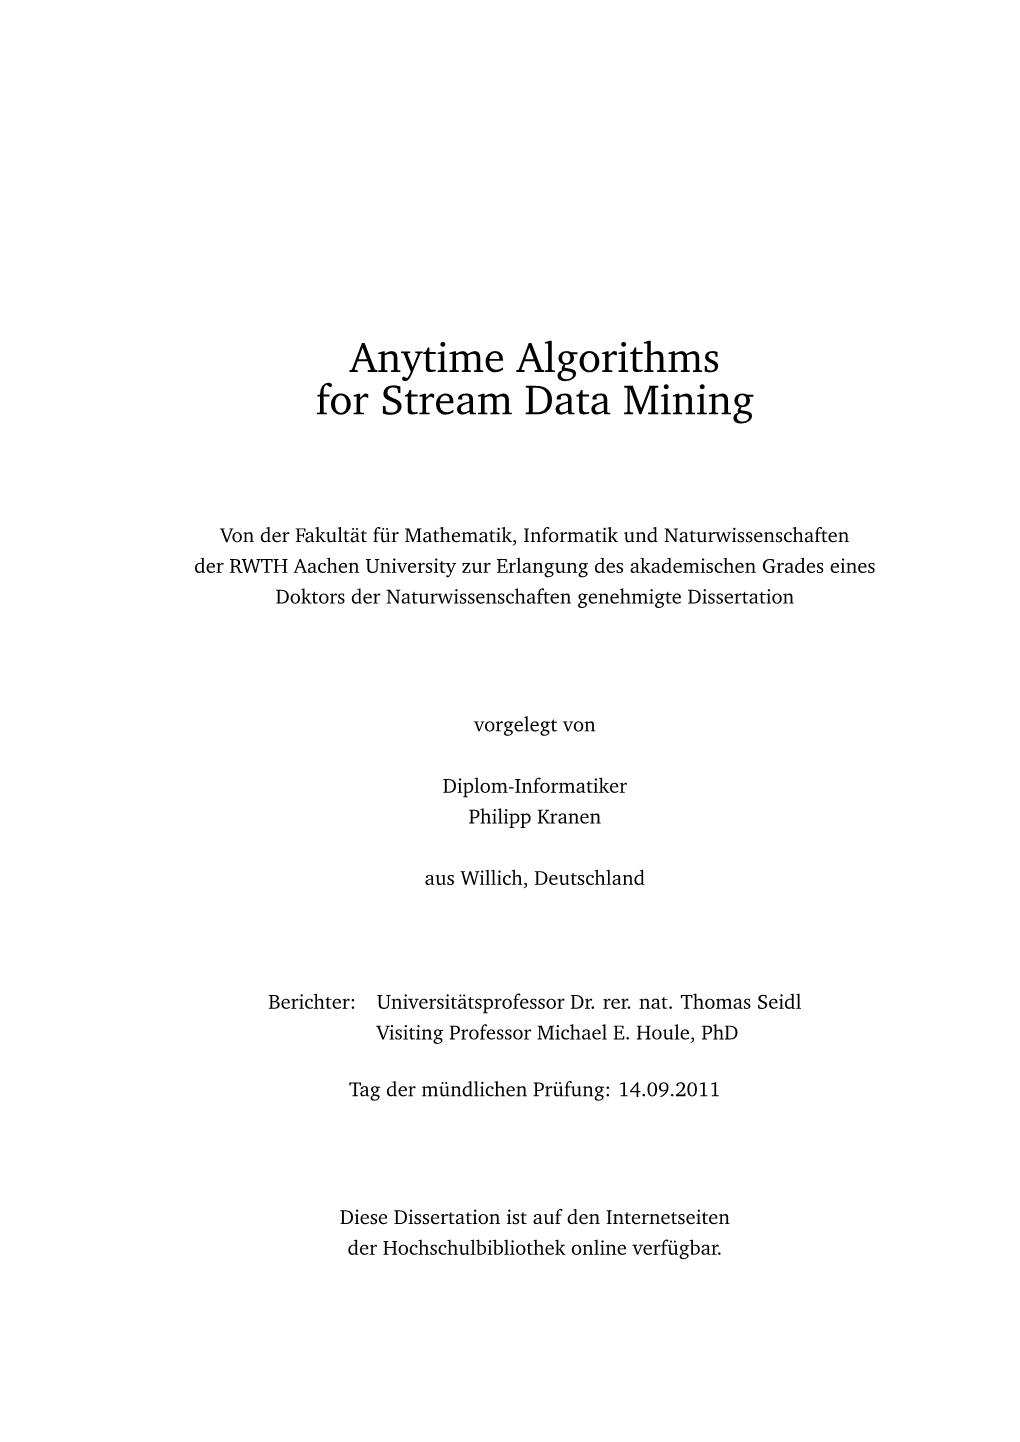 Anytime Algorithms for Stream Data Mining